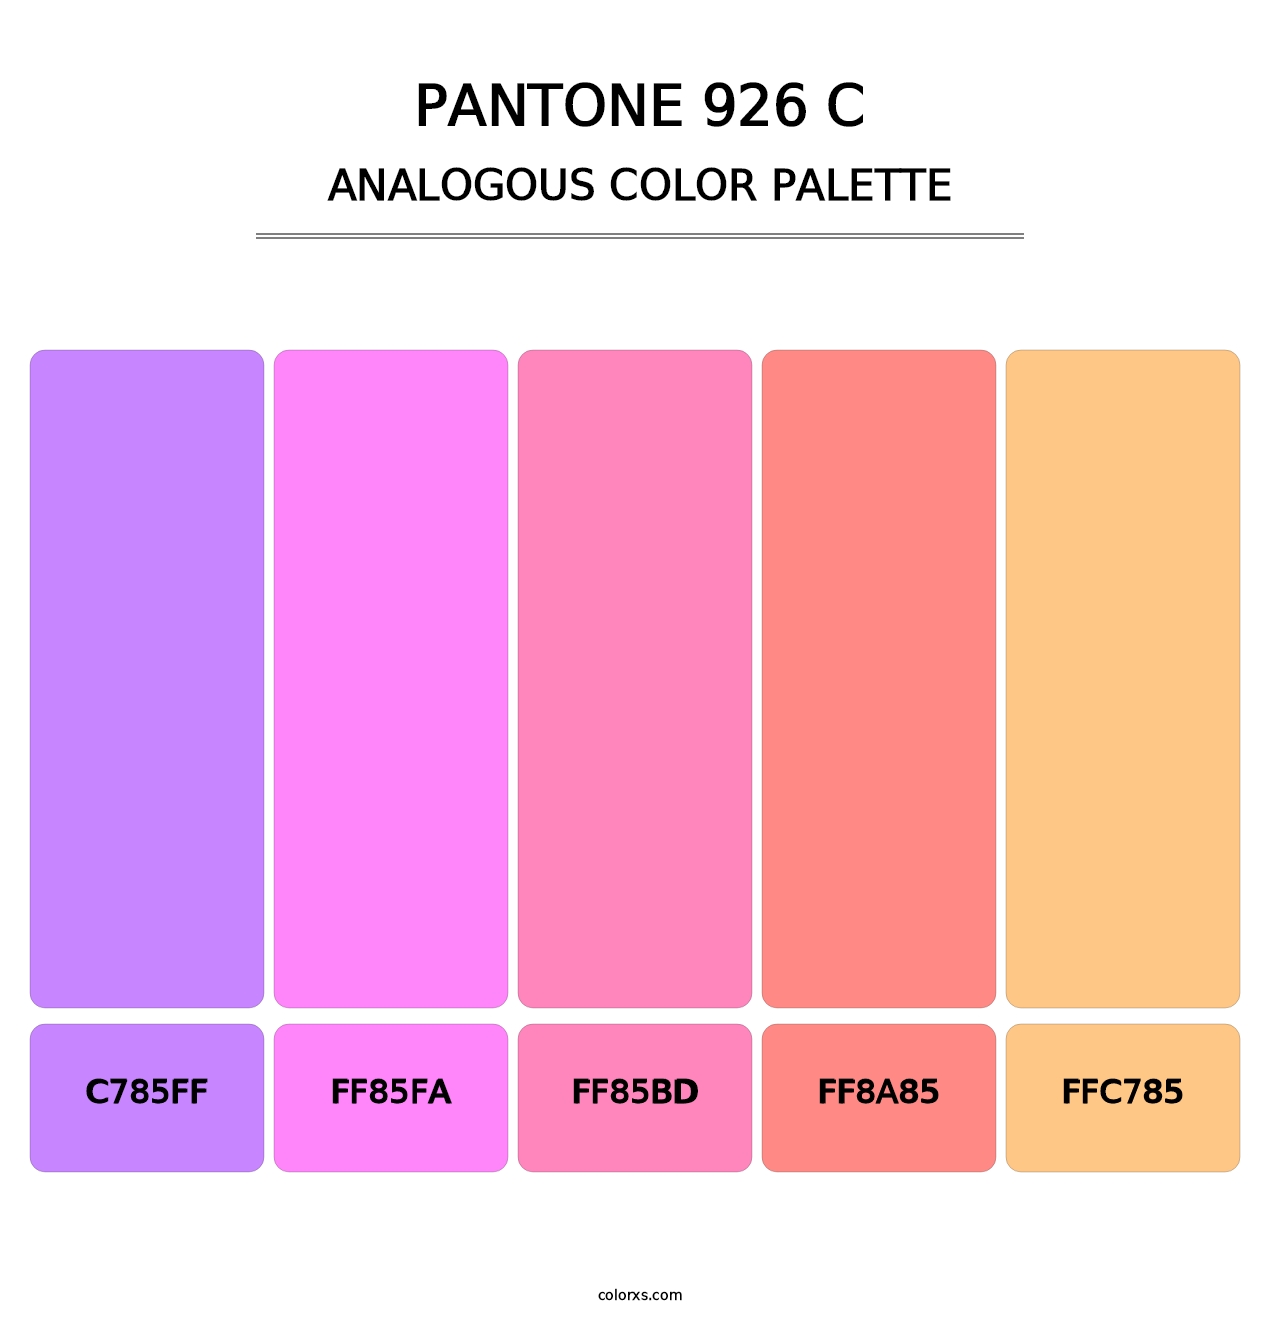 PANTONE 926 C - Analogous Color Palette